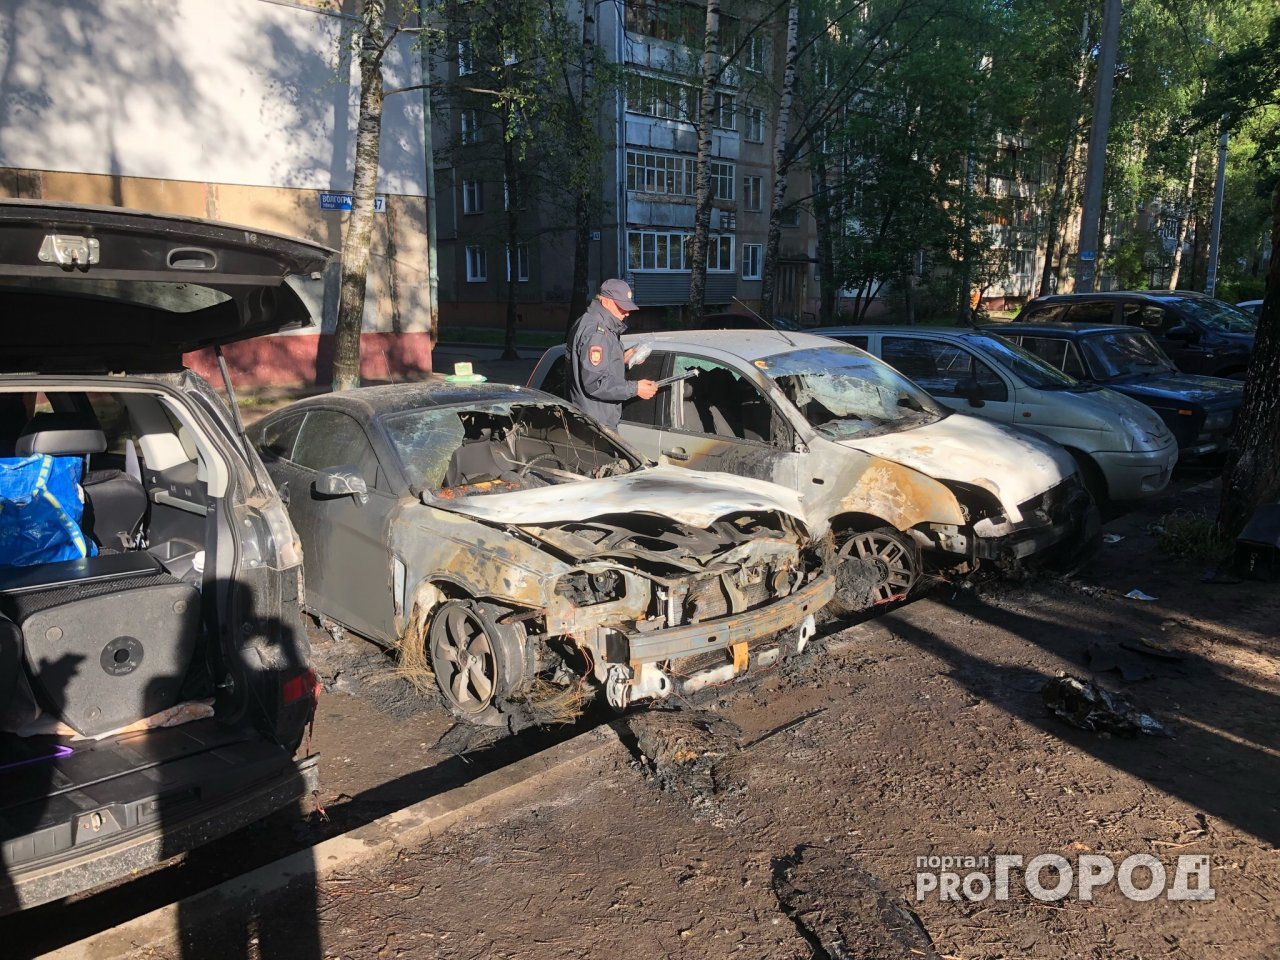 В Ярославле нашли пироманов, которые поджигали автомобили: реакция потерпевших